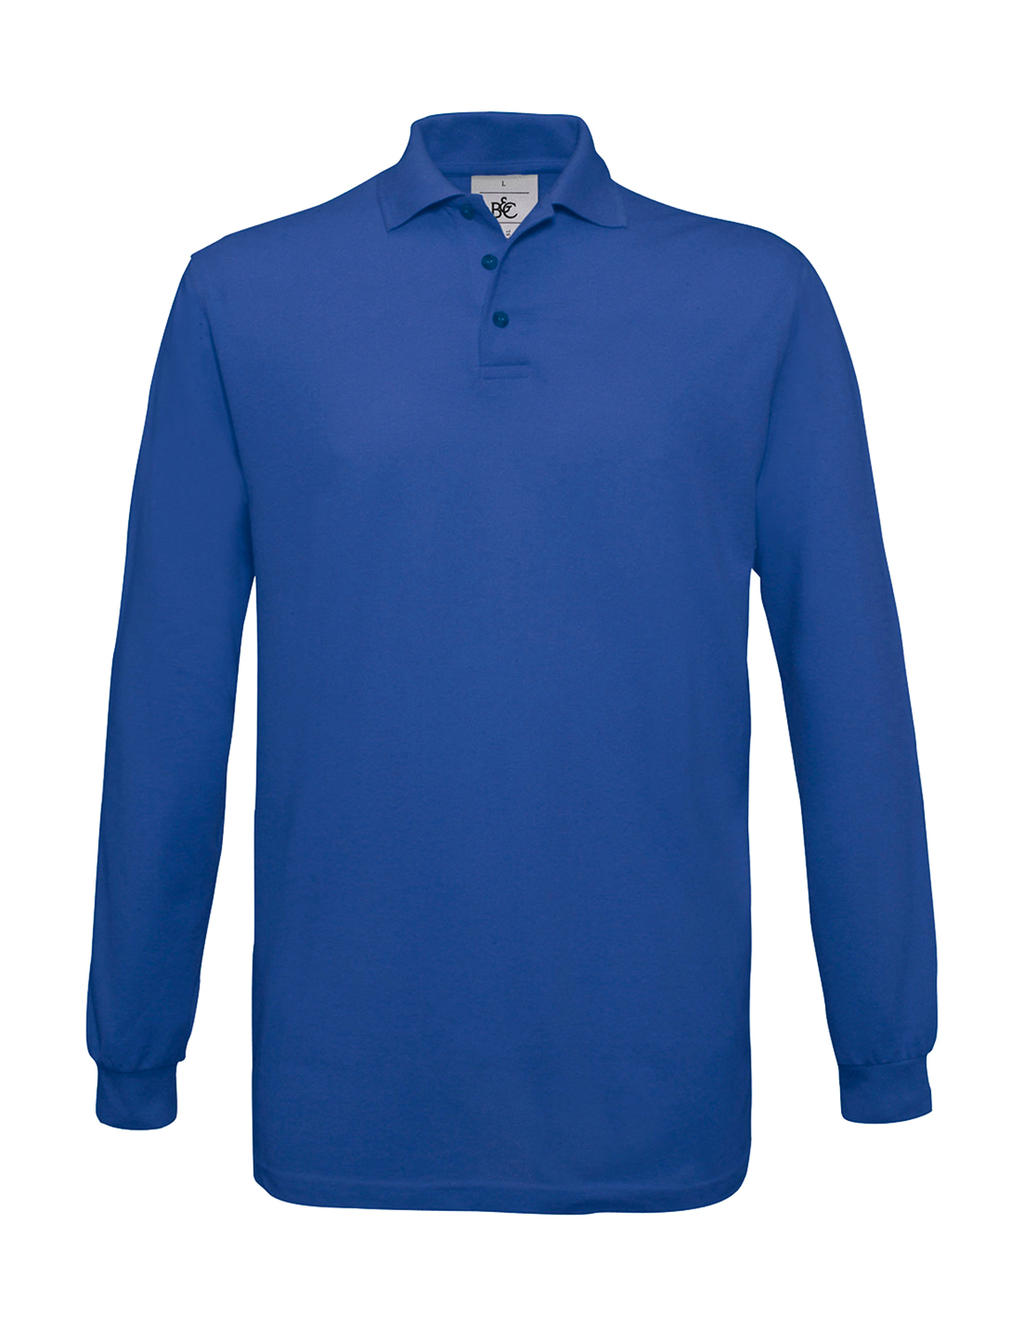 Pánské polo tričko B&C Safran s dlouhým rukávem - modré, XL